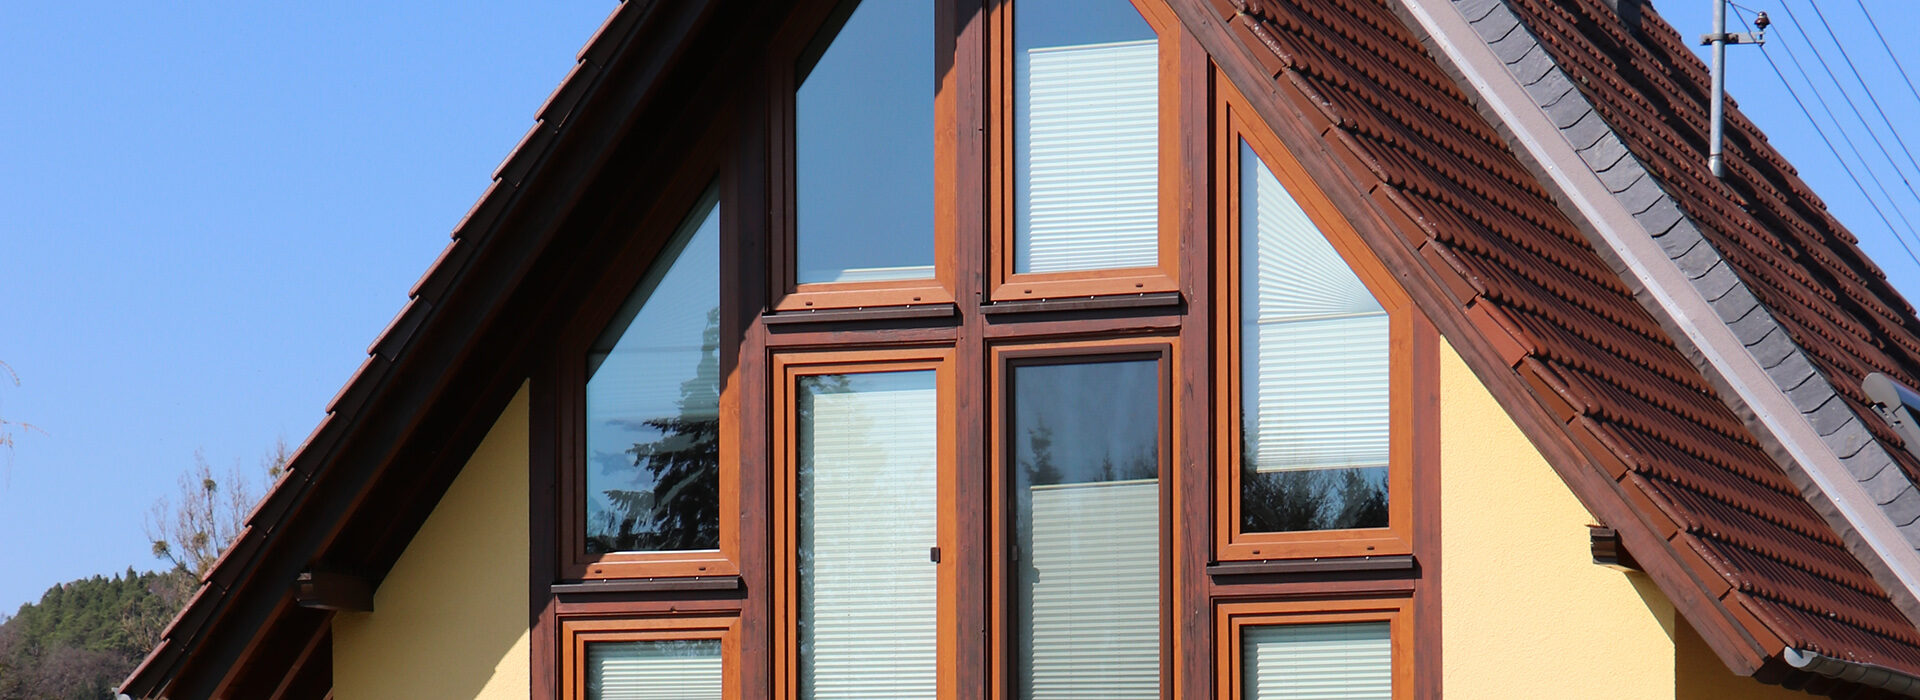 Holzfenster im Dachgiebel